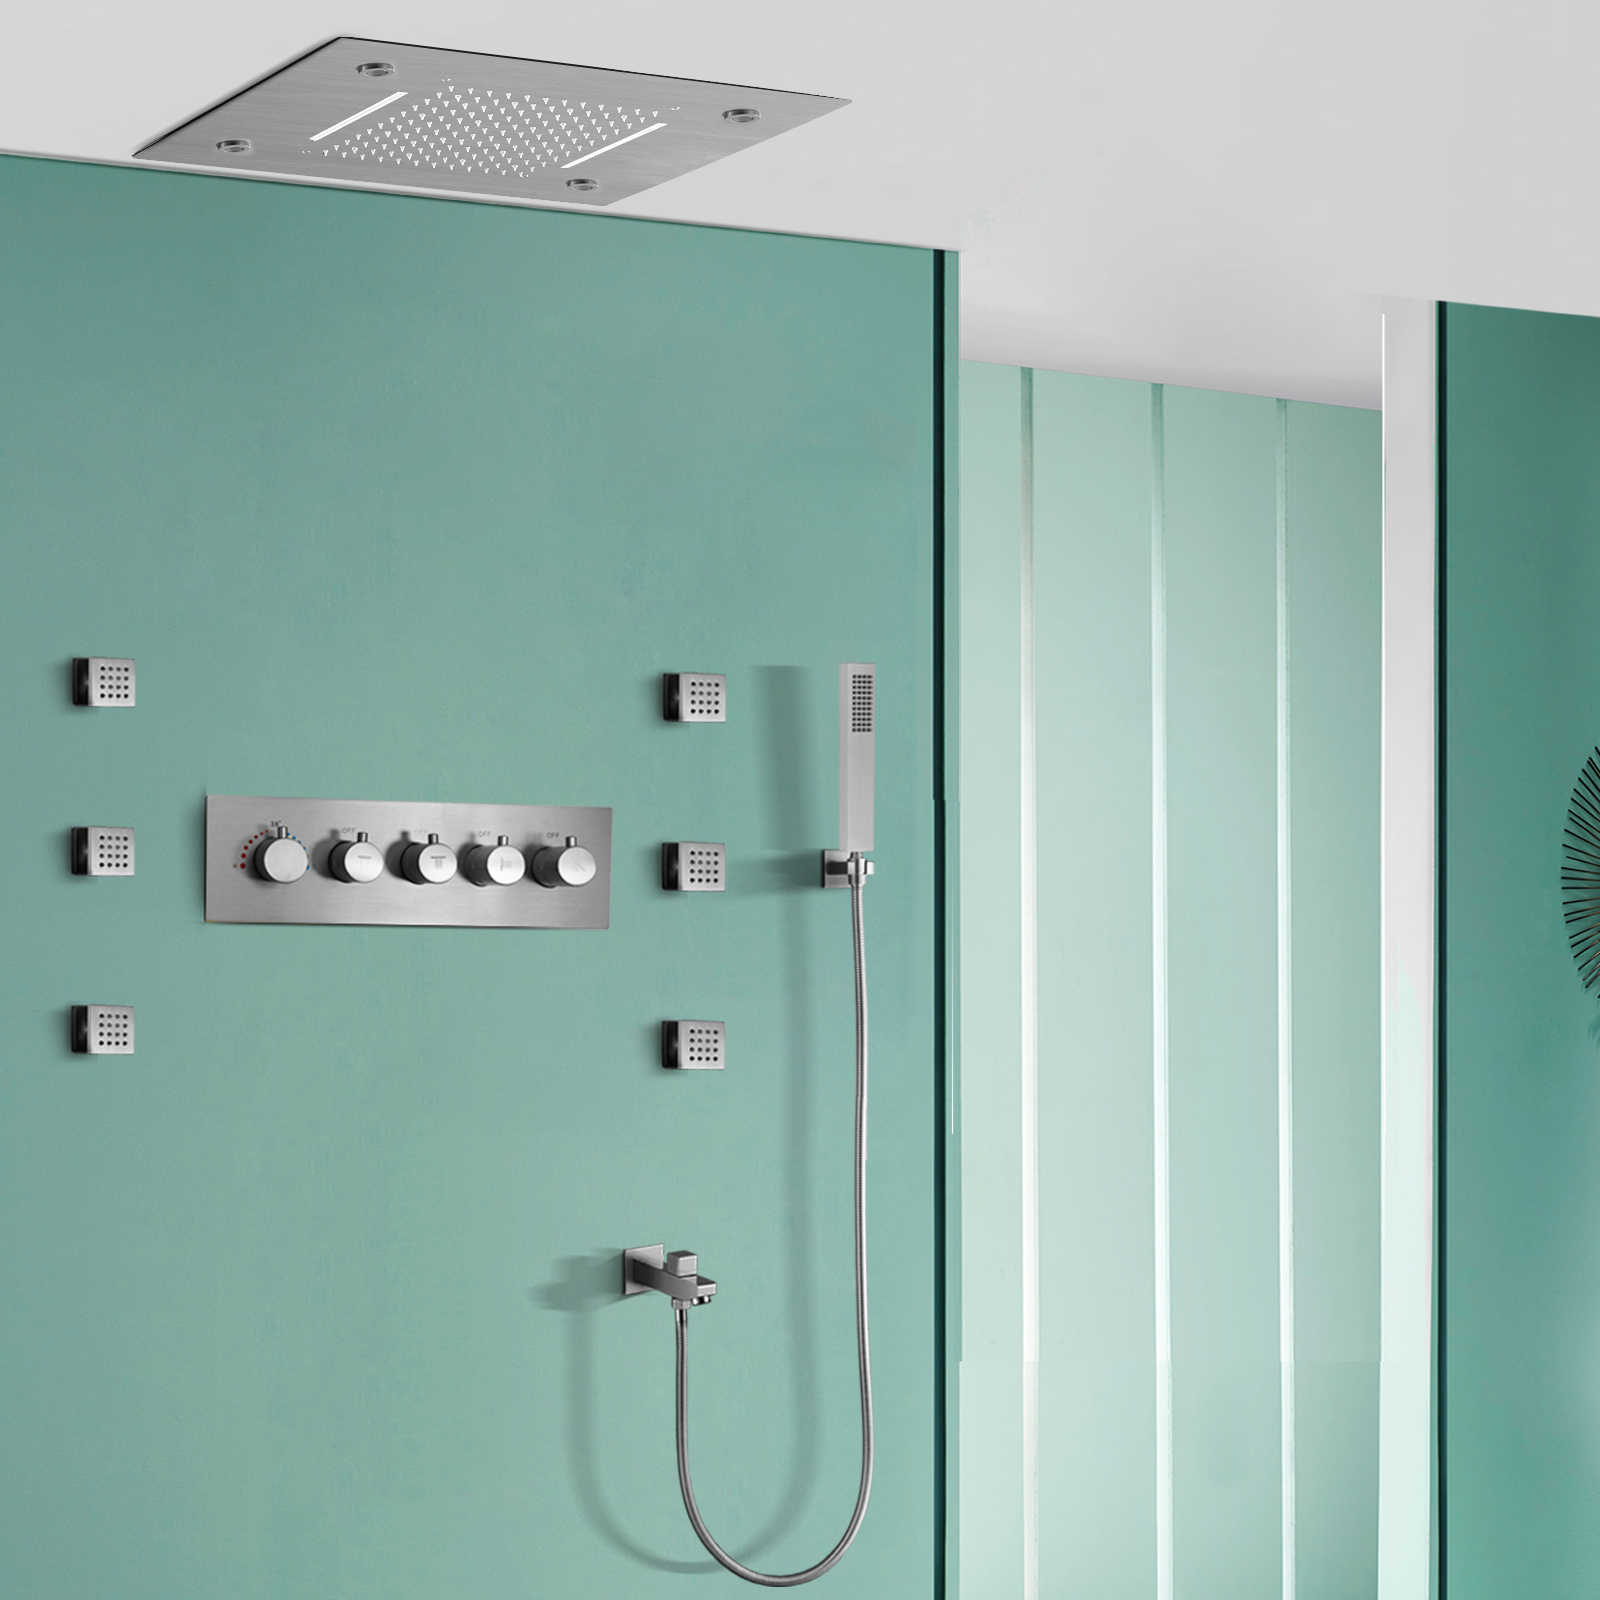 Sistema de ducha de baño con cascada de lluvia y temperatura constante cepillada, Control remoto, LED, boquilla oculta, juego de ducha de masaje